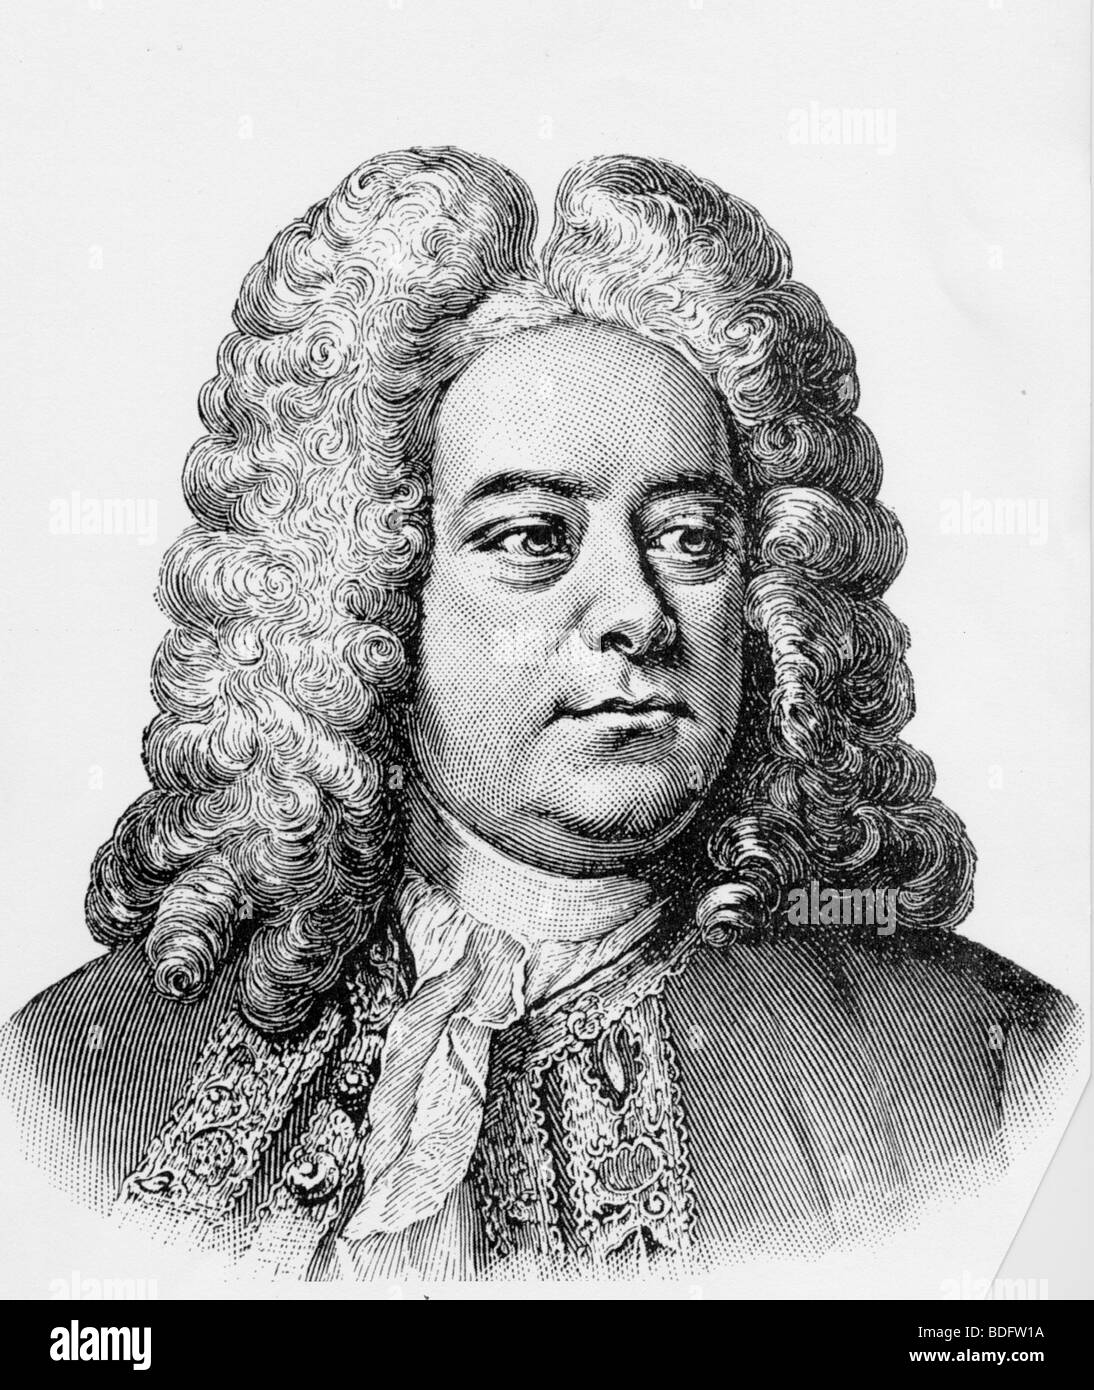 Händel - Deutsch-englischer Komponist 1685-1759 Stockfoto